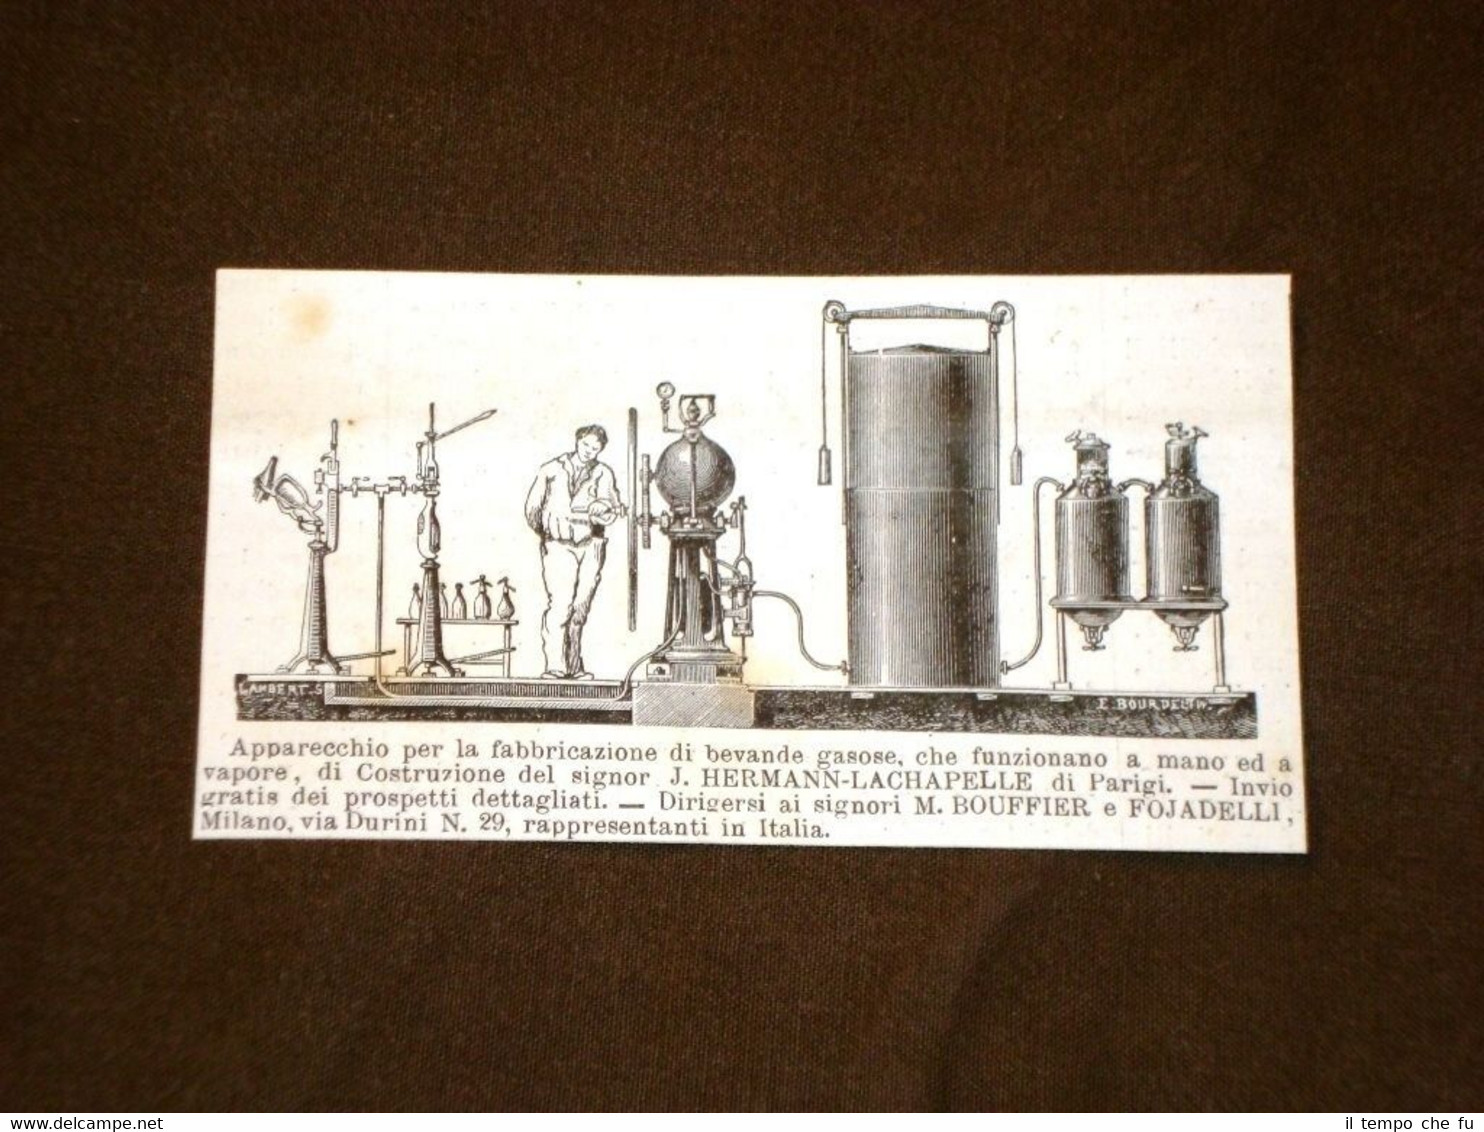 Incisione del 1879 Invenzione Apparecchio bevande gassose di Hermann Lachapelle